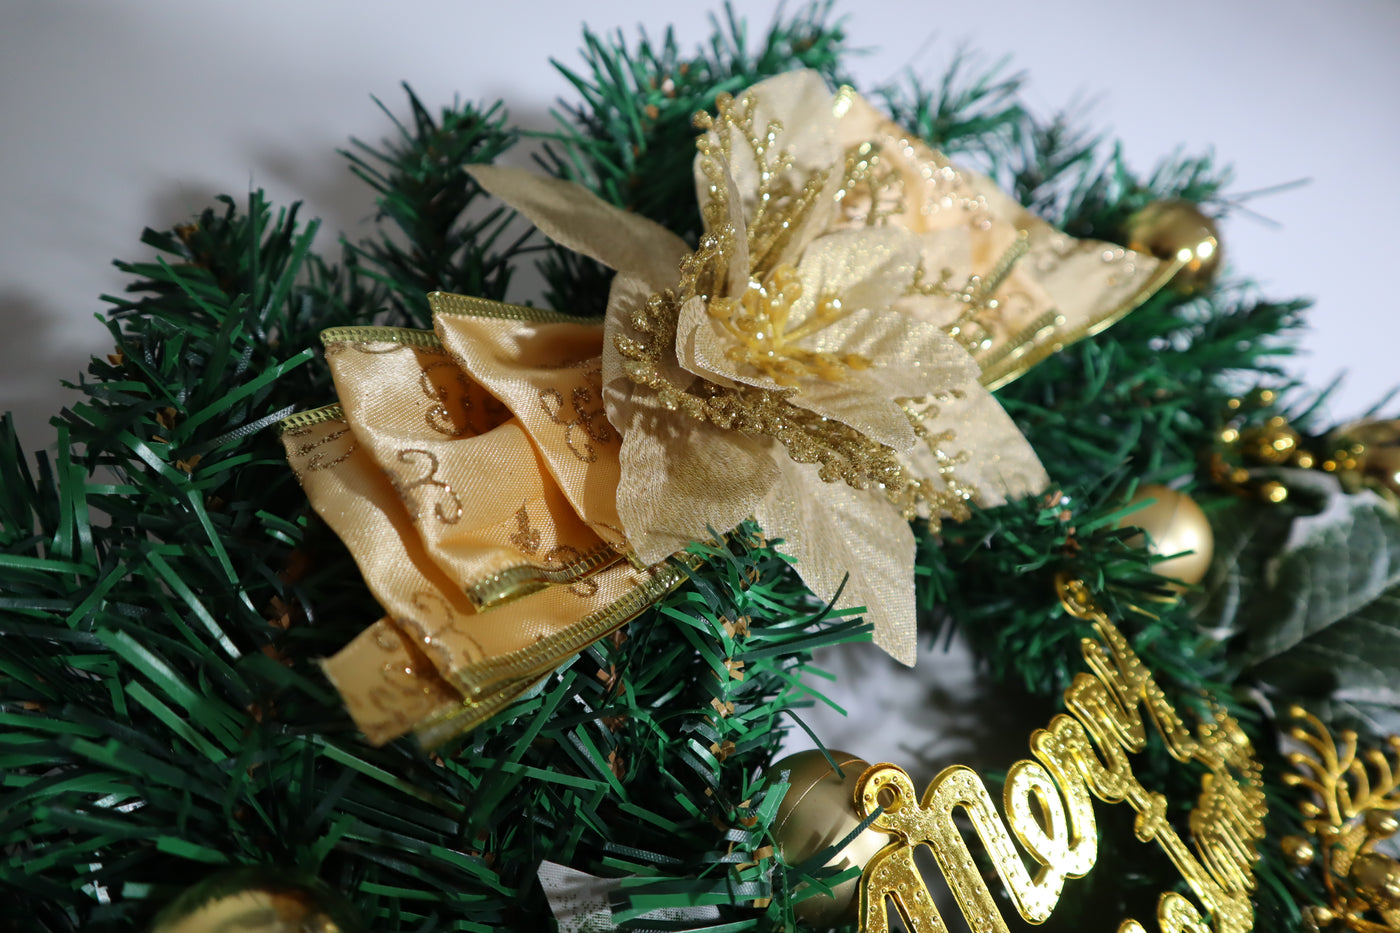 30cm Christmas Wreath for Door - Partyshakes Wreaths & Garlands